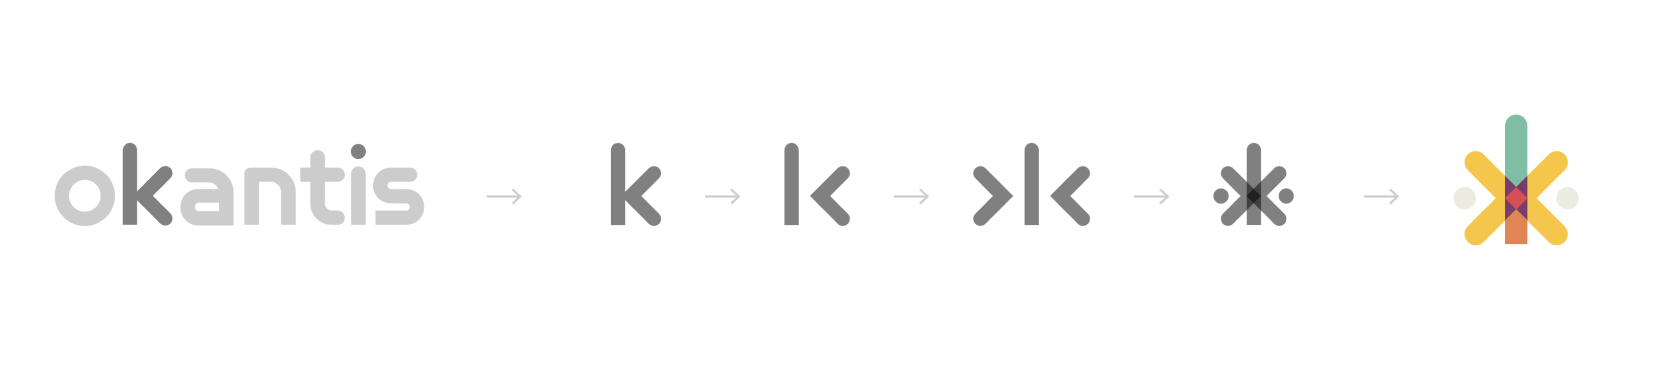 Agence Pixine : principe de construction du logotype et de la charte graphique de Okantis